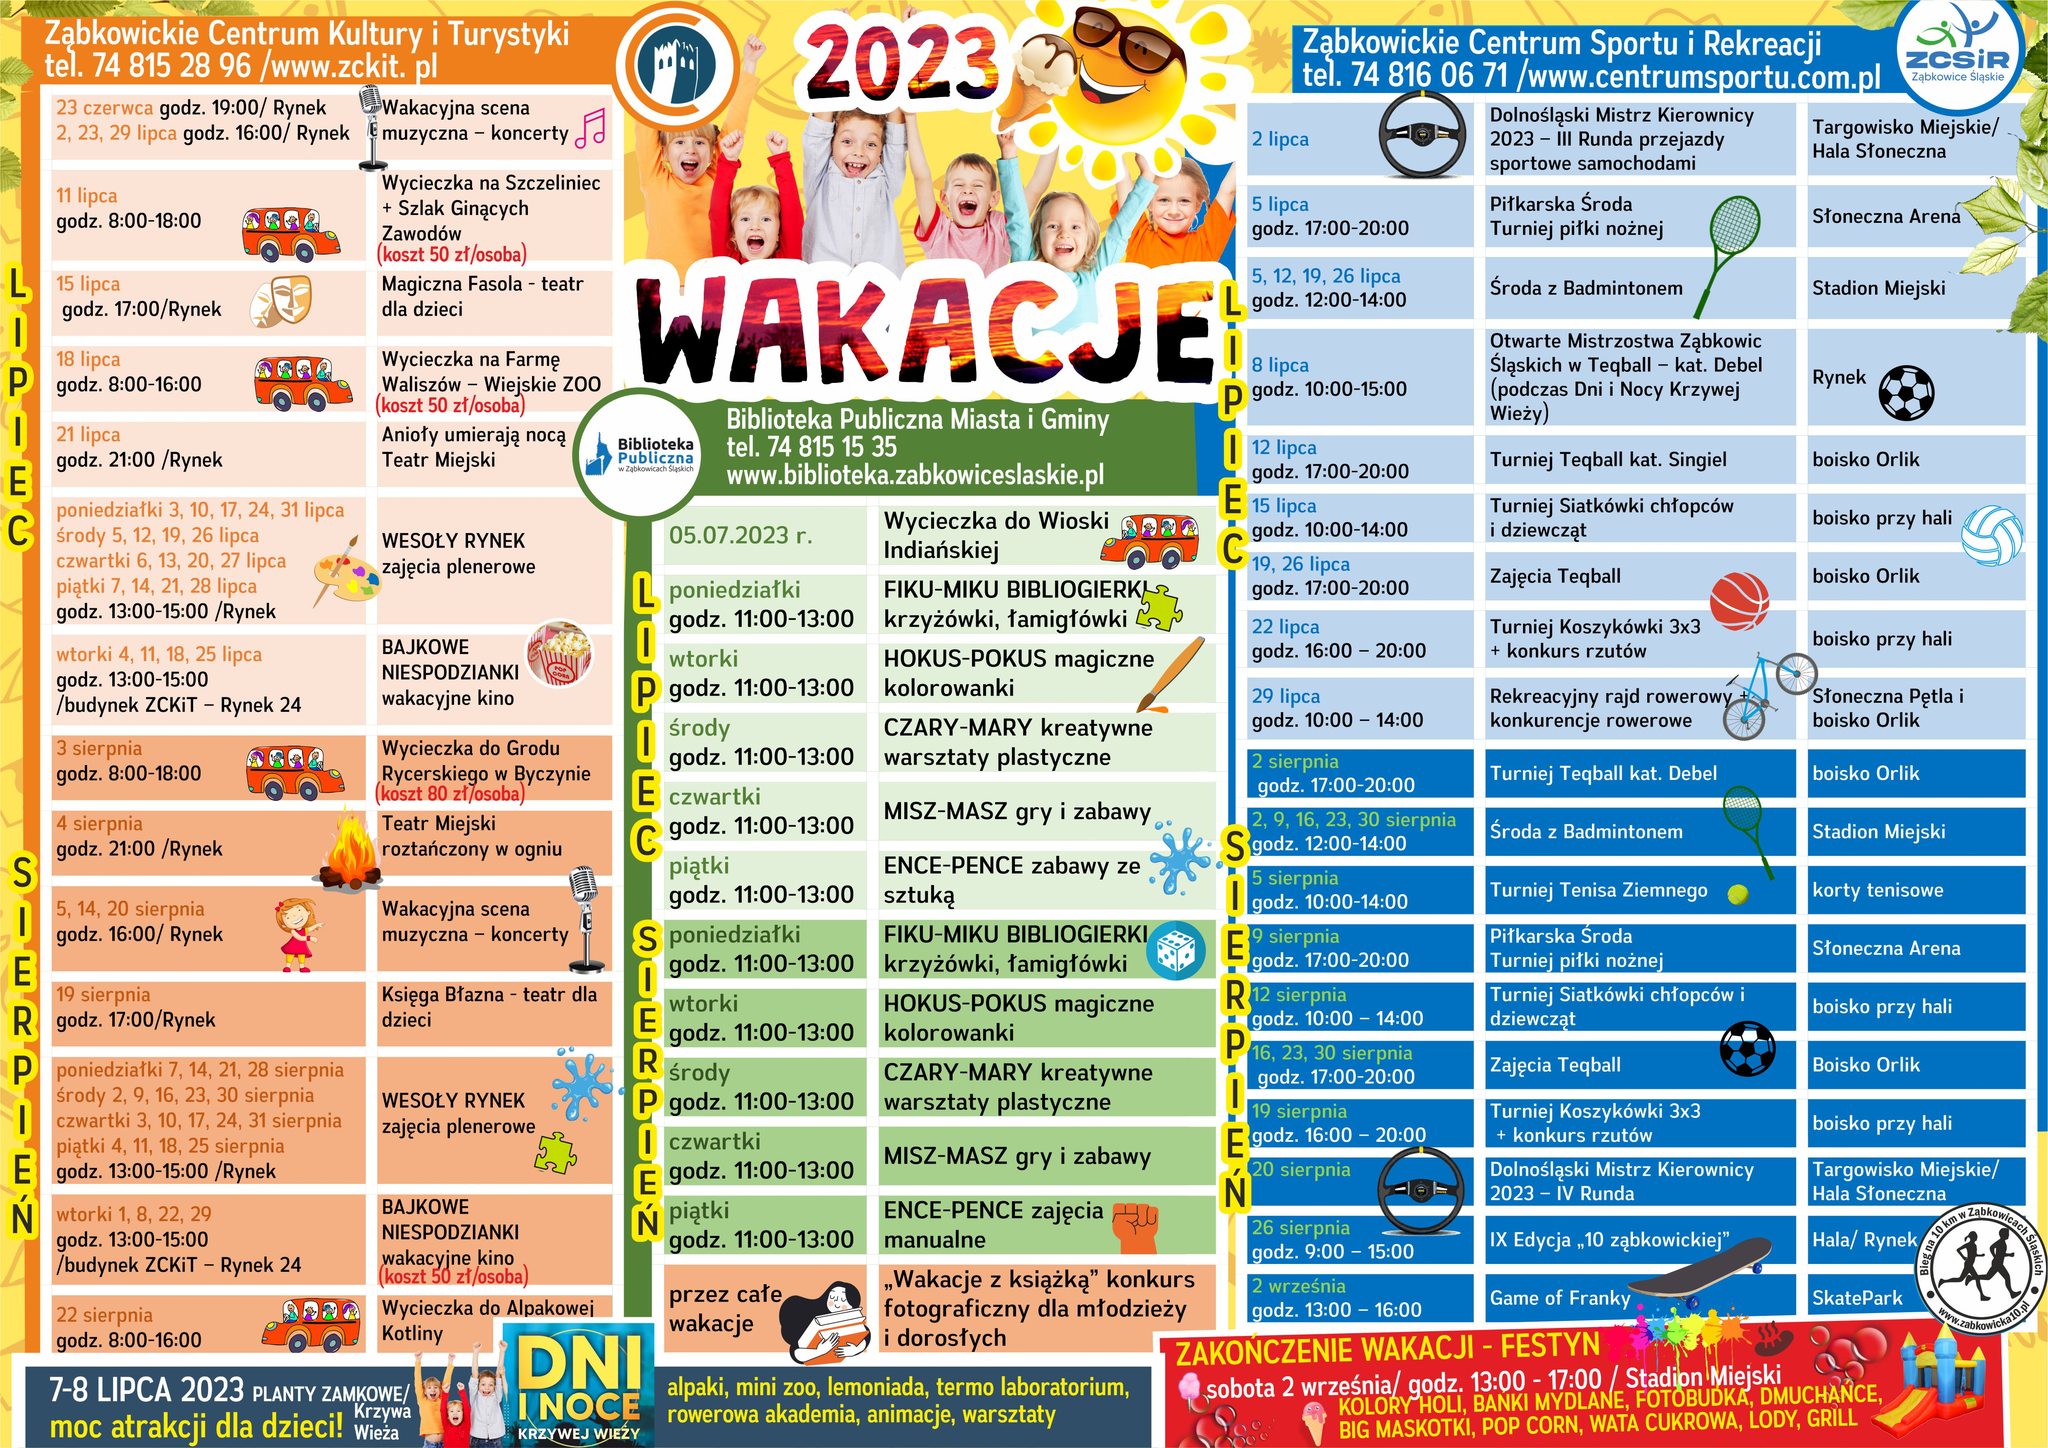 Plakat z harmonogramem wydarzeń i atrakcji dla dzieci w czasie wakacji 2023r, które były organizowane przez Ząbkowickie Centrum Kultury i Turystyki